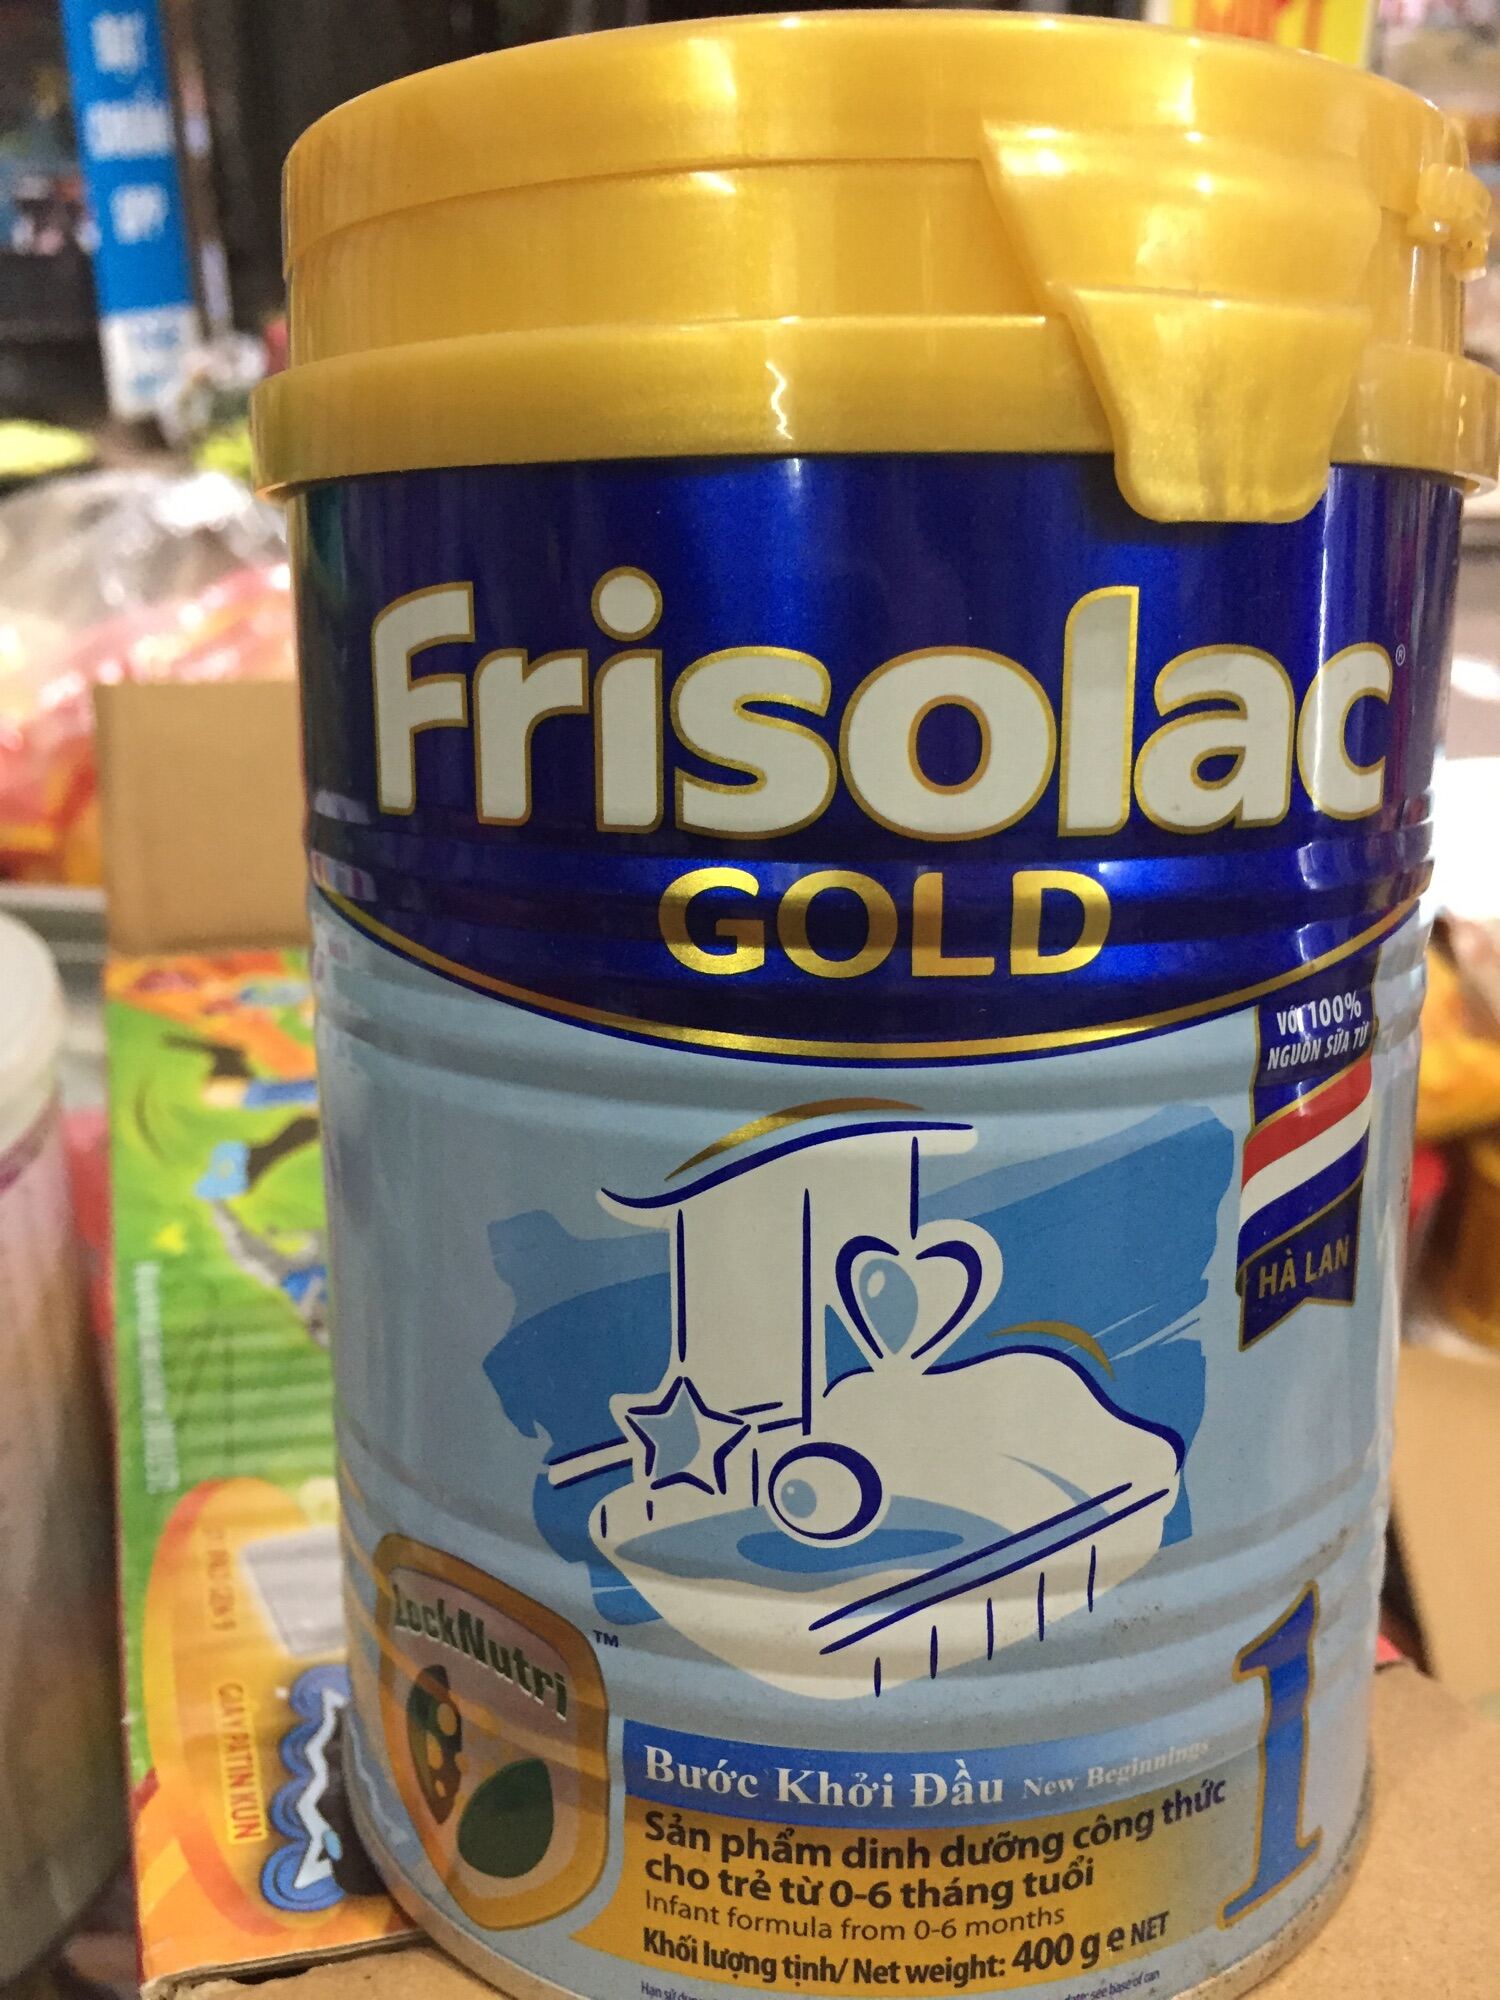 Sữa bột frisolac gold  bước khởi đầu cho trẻ - ảnh sản phẩm 1